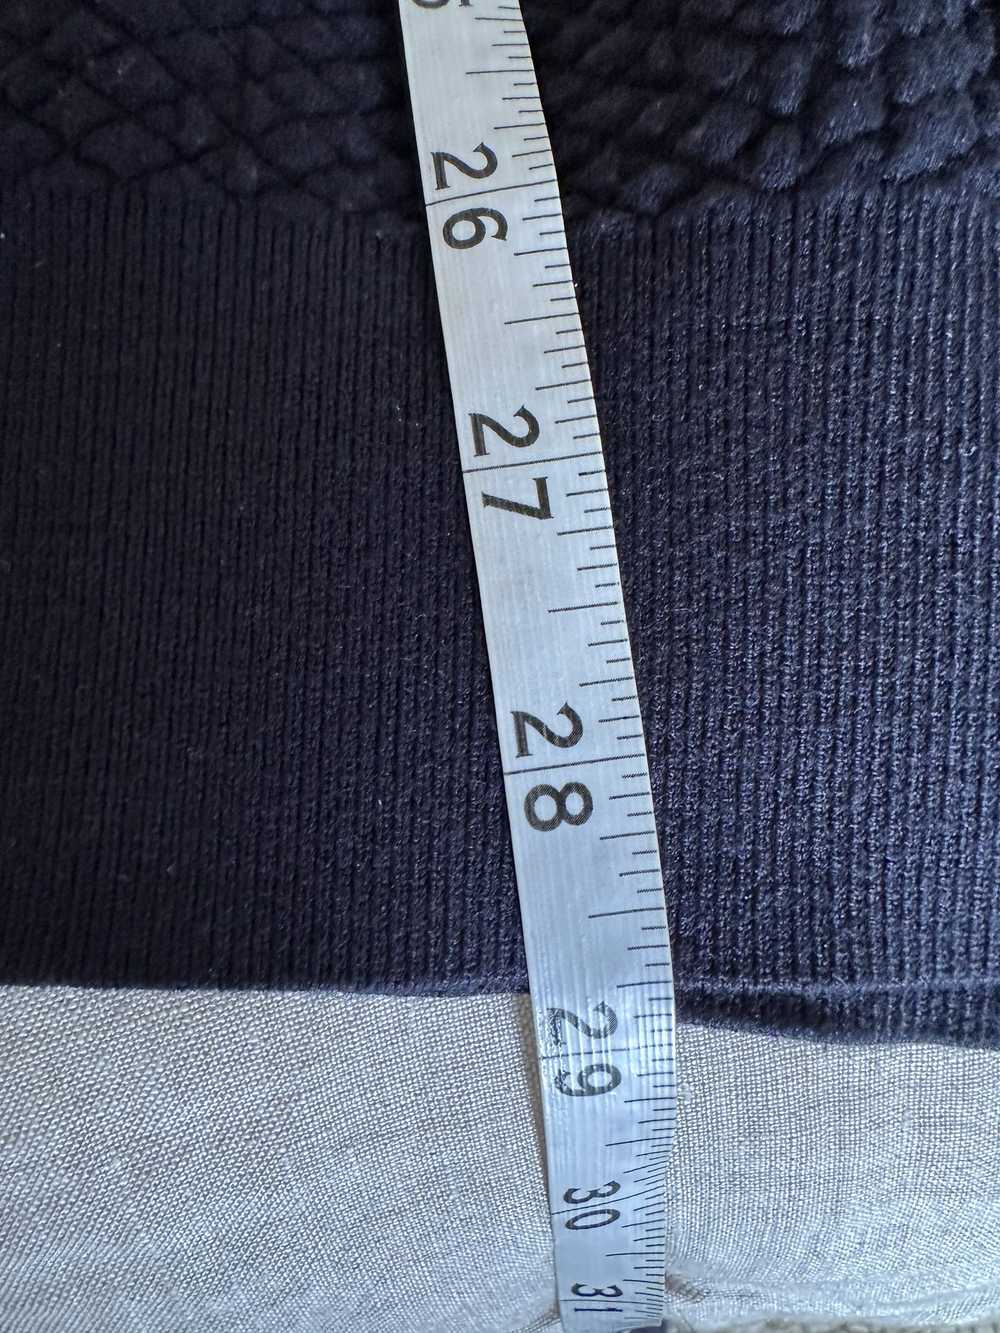 A.P.C. A.P.C Knit Sweater - image 6